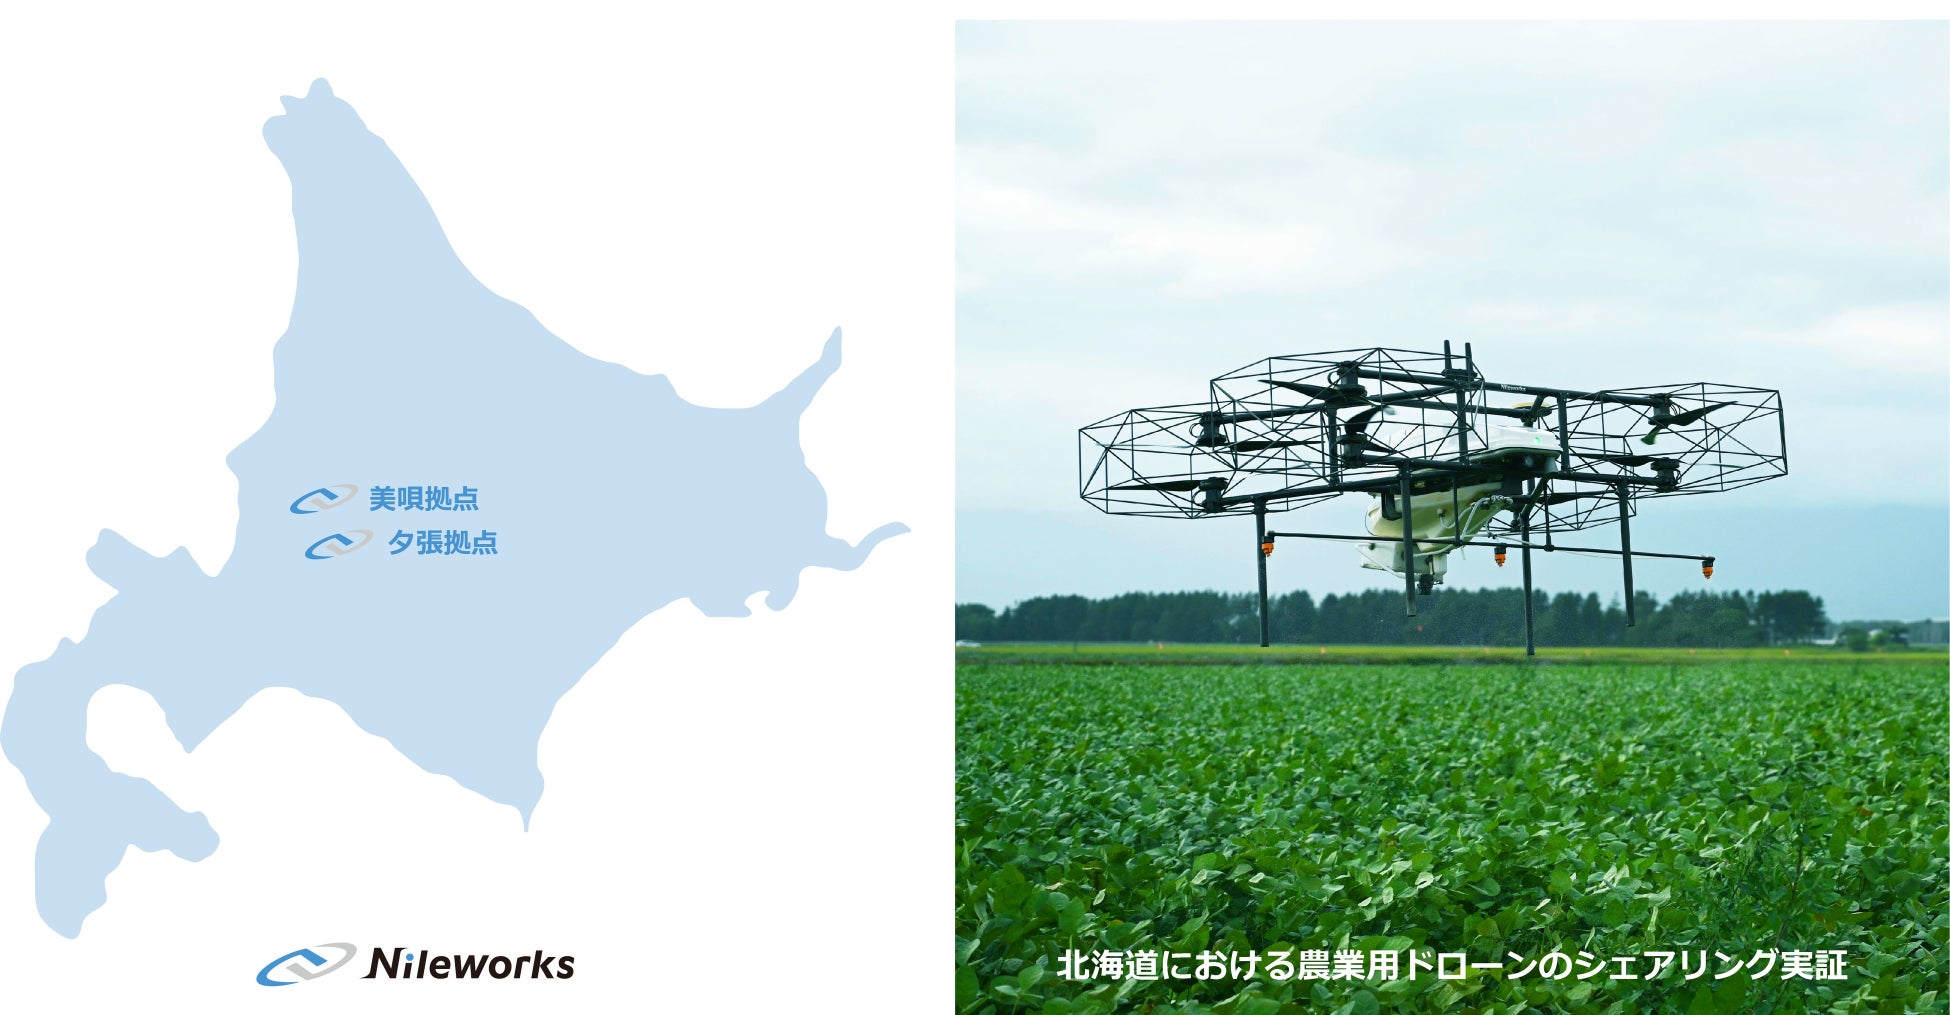 「農業用ドローン」「農業DX」を推進するナイルワークスは、北海道夕張に拠点を開設のサブ画像1